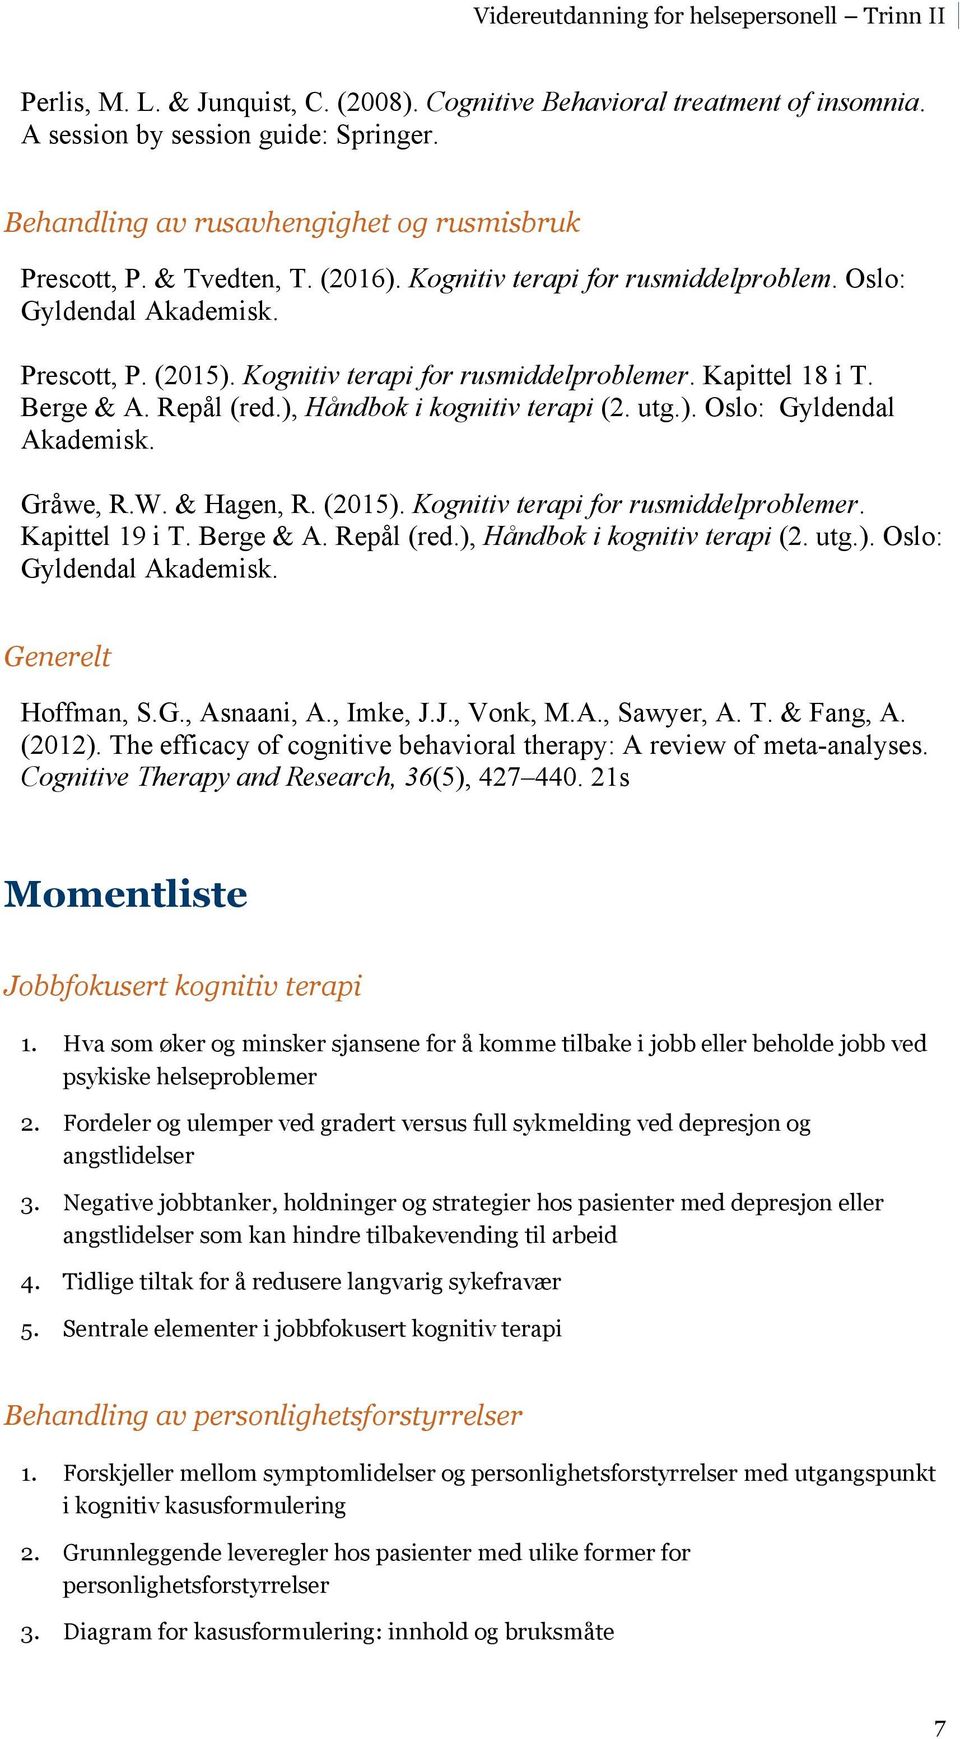 utg.). Oslo: Gyldendal Akademisk. Gråwe, R.W. & Hagen, R. (2015). Kognitiv terapi for rusmiddelproblemer. Kapittel 19 i T. Berge & A. Repål (red.), Håndbok i kognitiv terapi (2. utg.). Oslo: Gyldendal Akademisk. Generelt Hoffman, S.